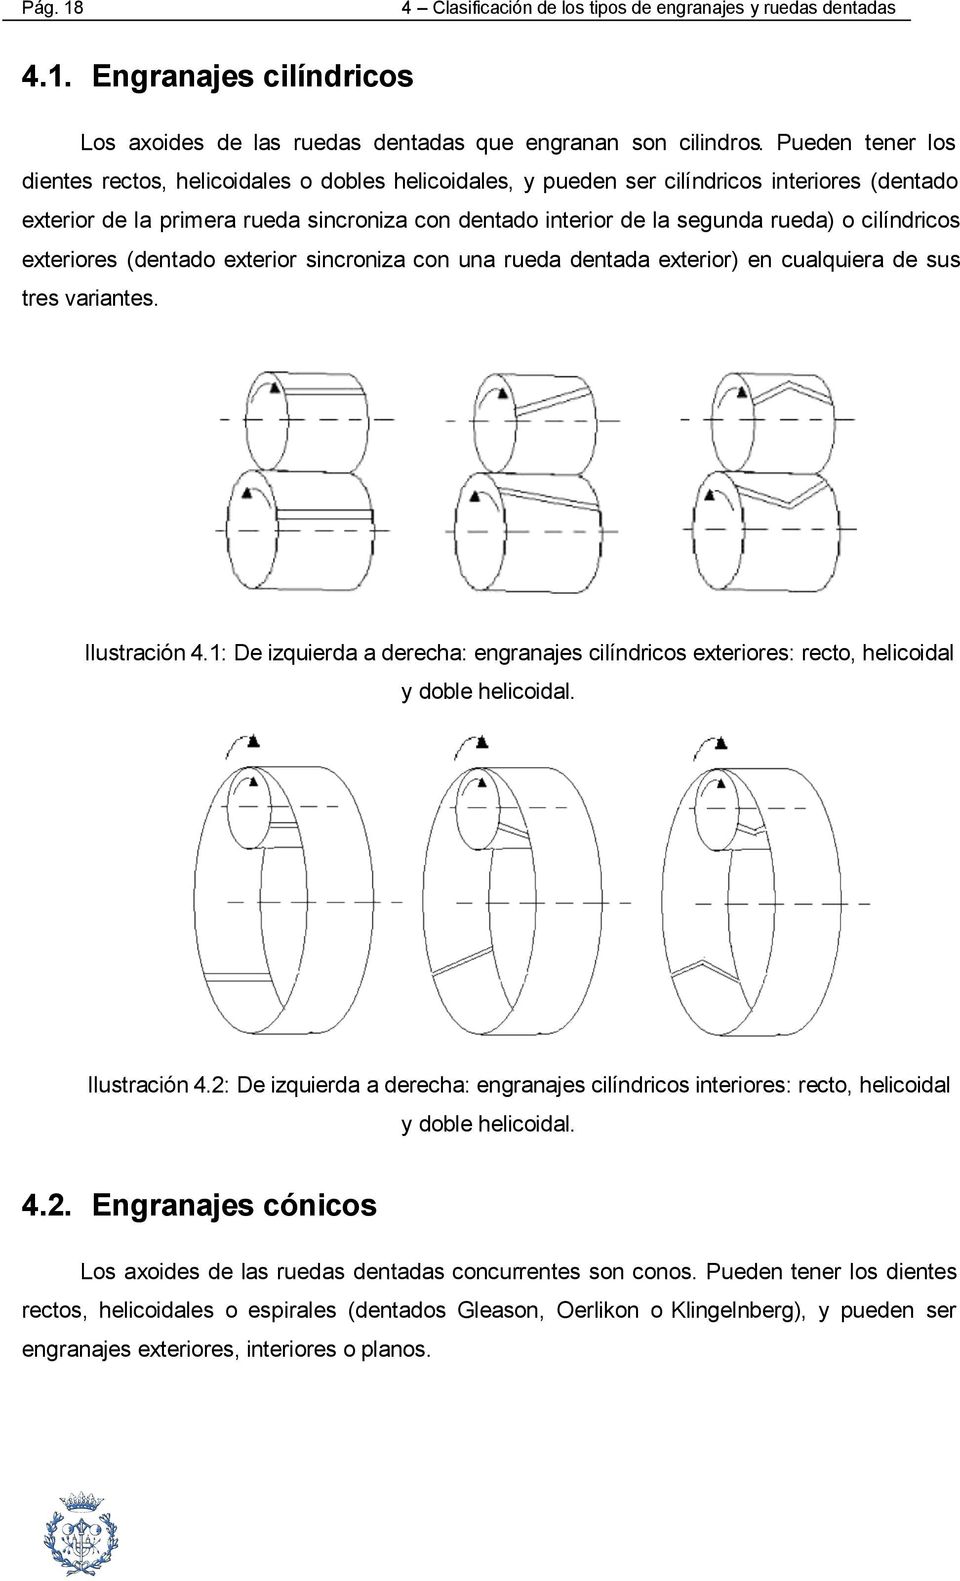 cilíndricos exteriores (dentado exterior sincroniza con una rueda dentada exterior) en cualquiera de sus tres variantes. Ilustración 4.